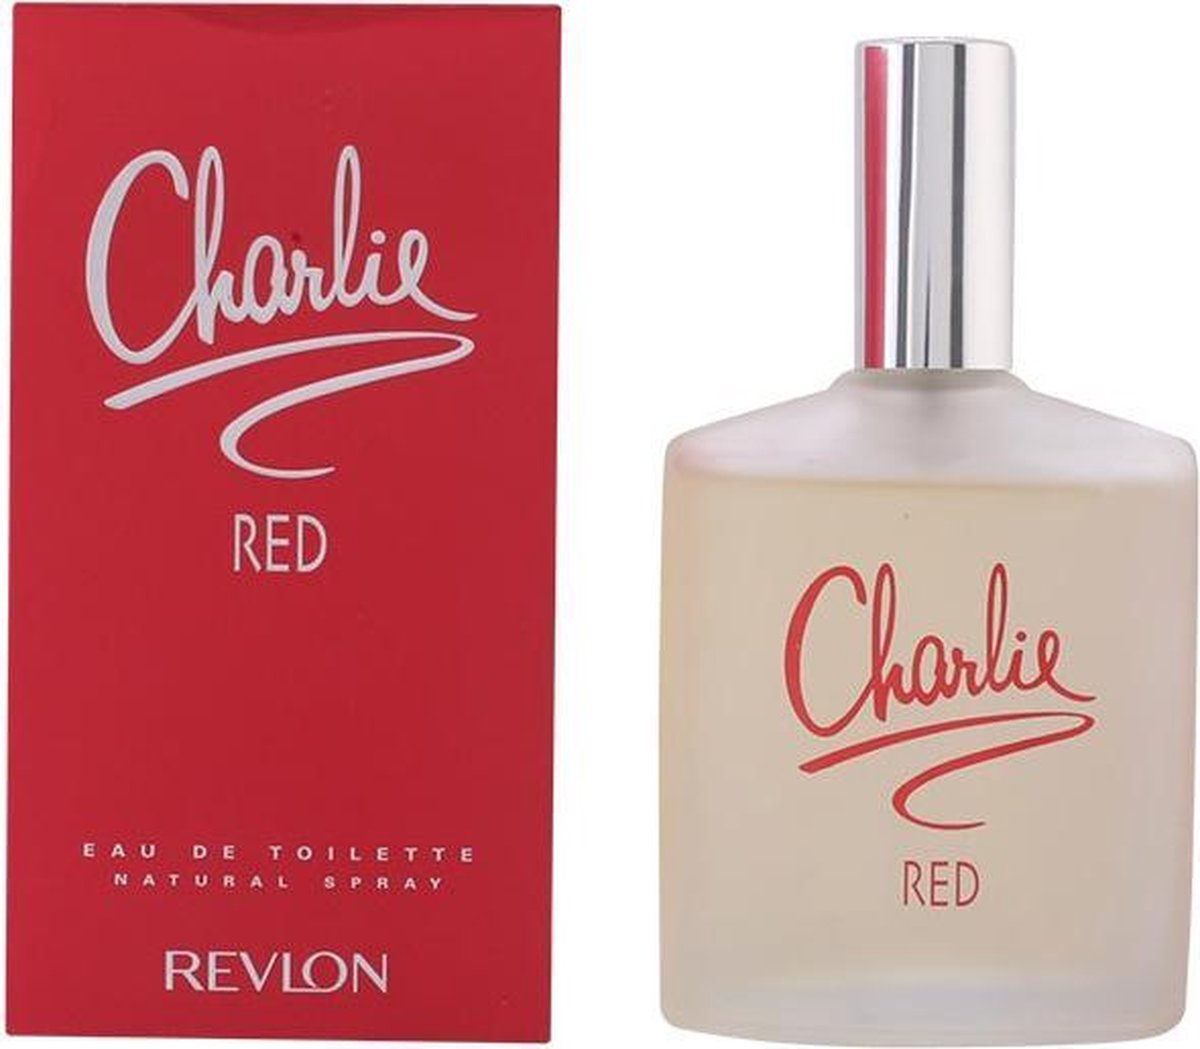 REVLON CHARLIE RED - eau de toilette - spray 100 ml